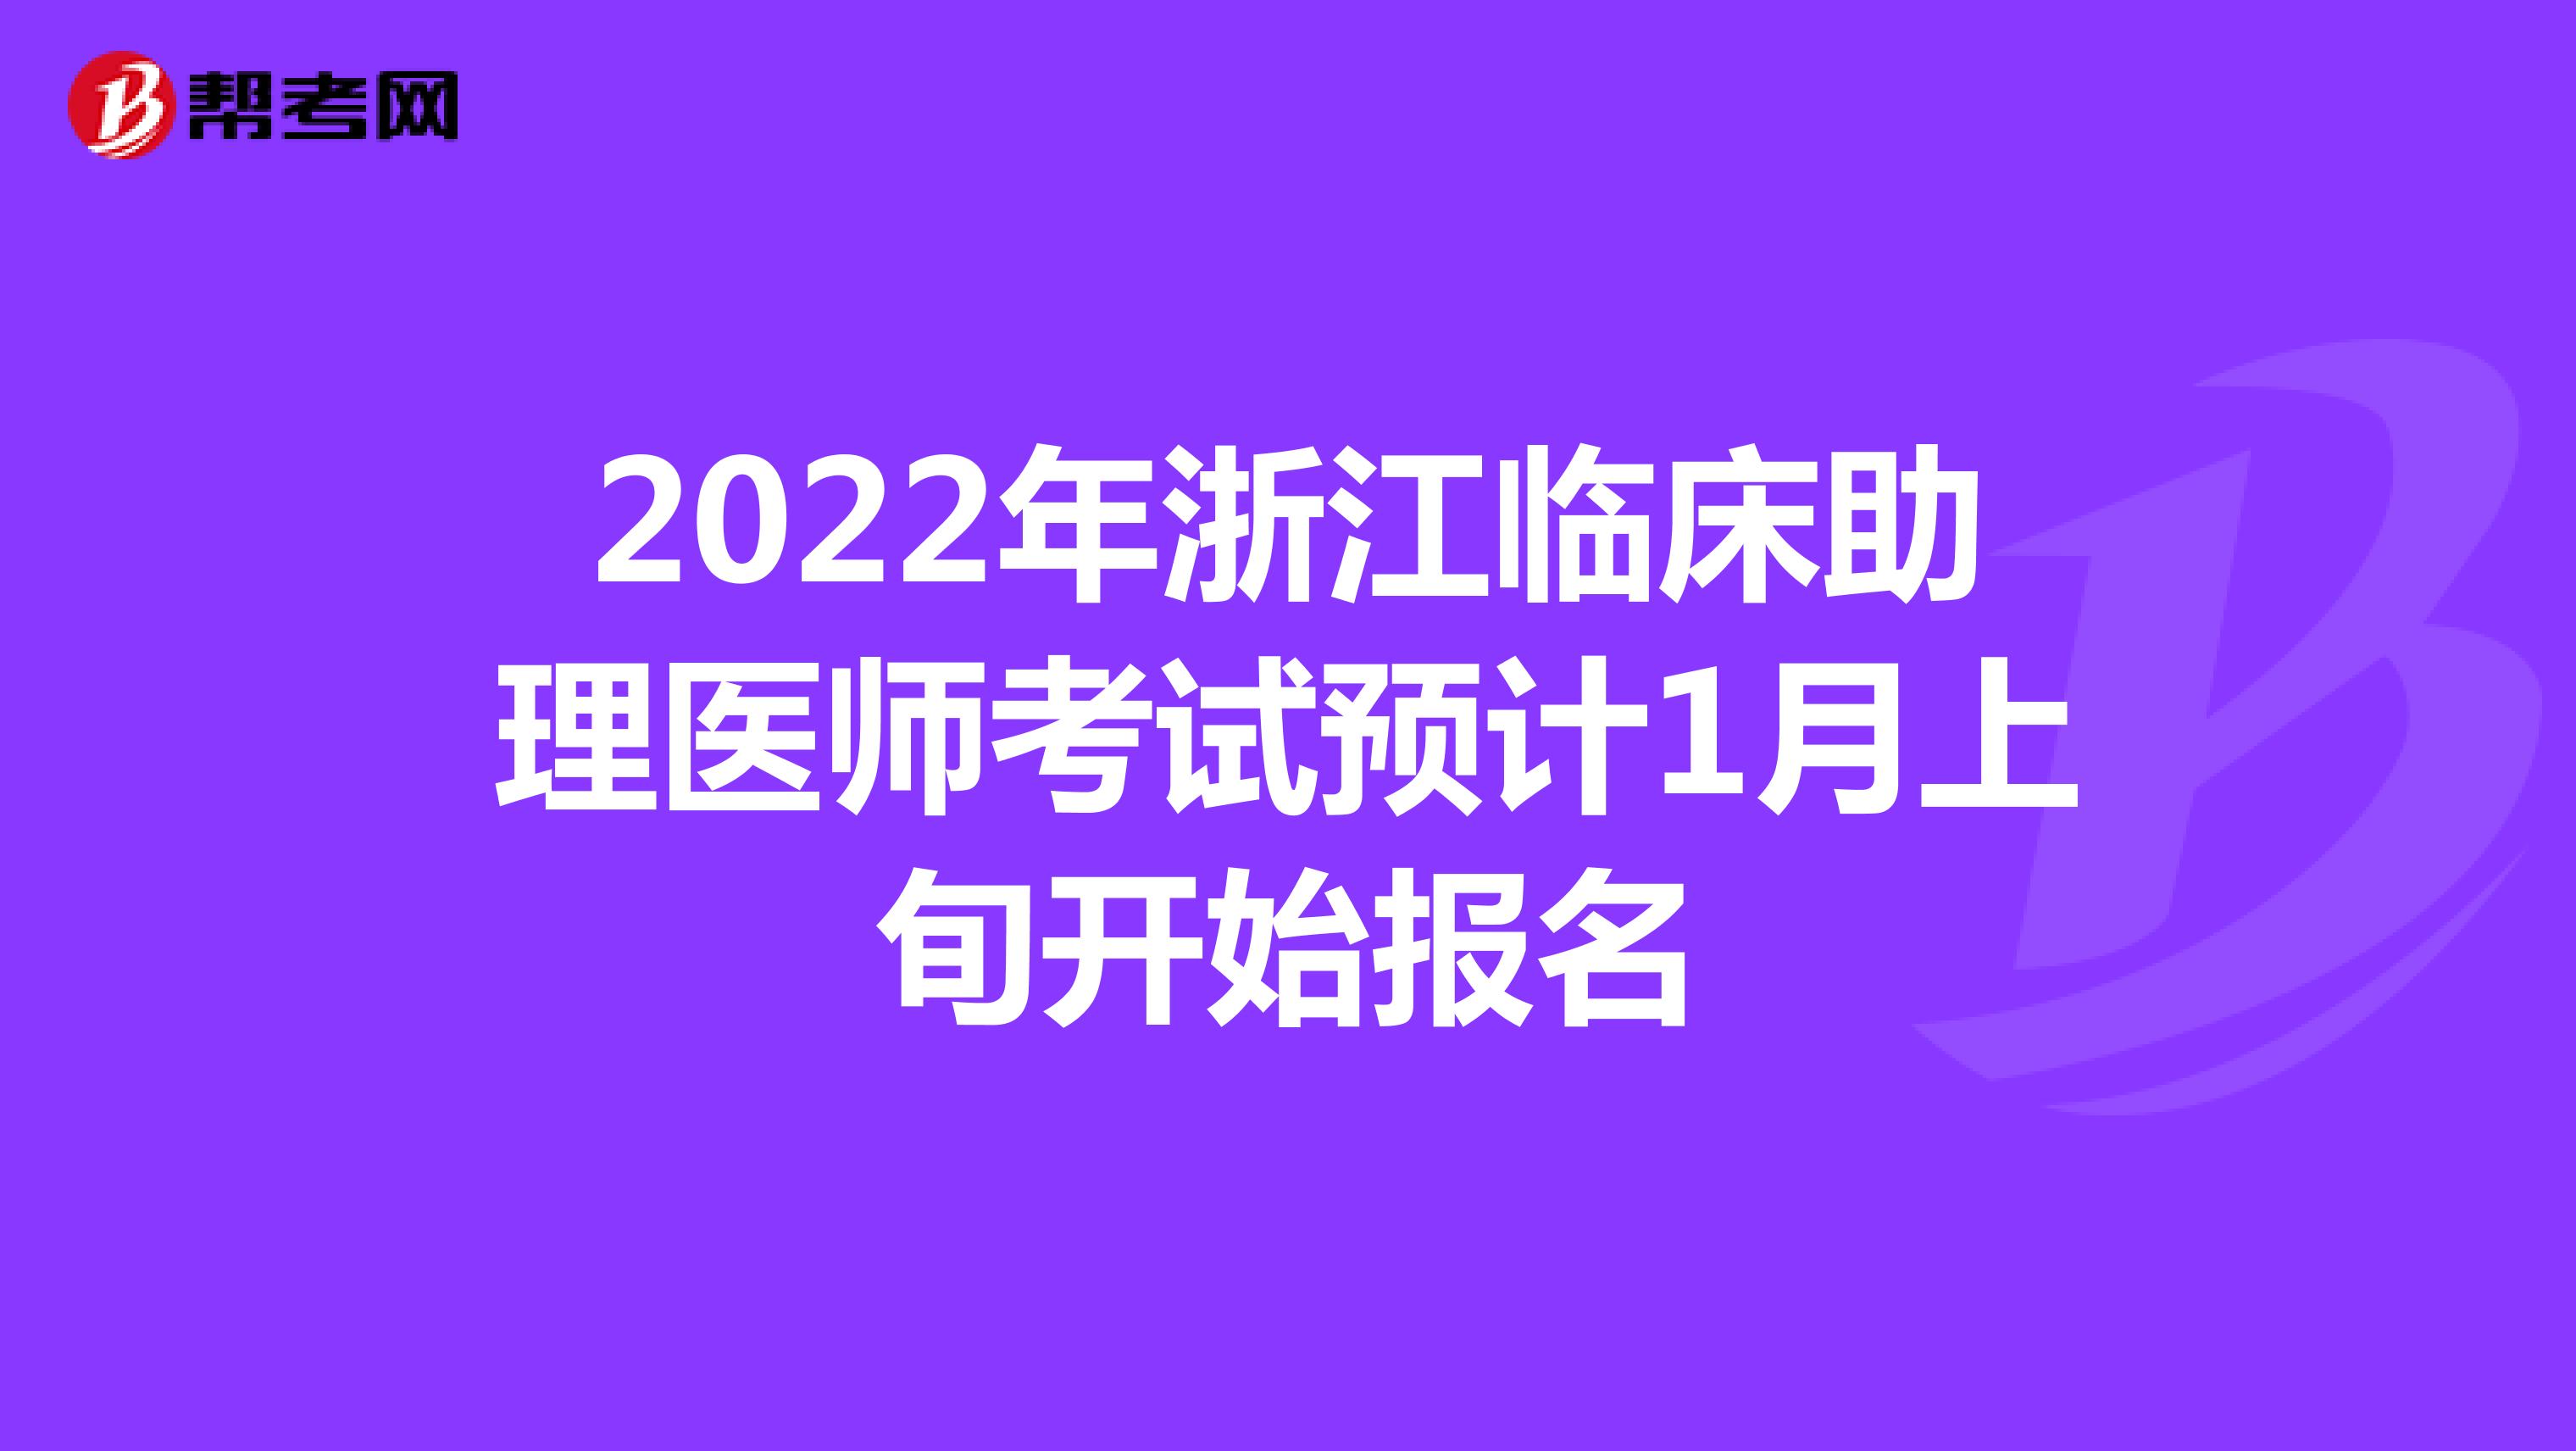 2022年浙江临床助理医师考试预计1月上旬开始报名